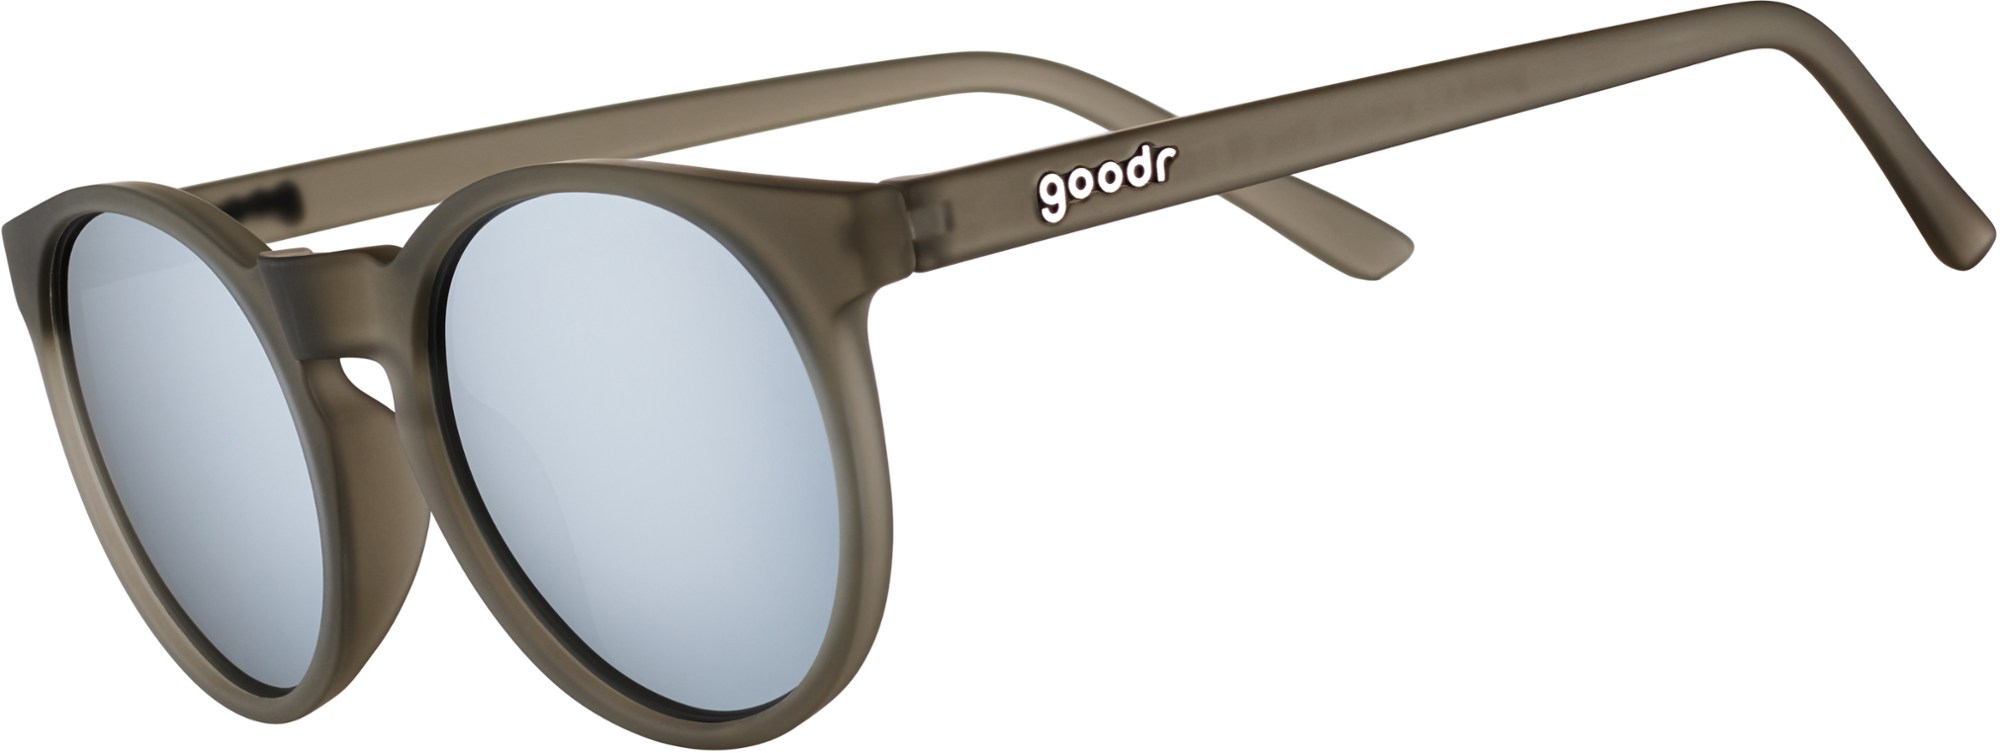 Поляризованные солнцезащитные очки Circle Gs goodr, серый